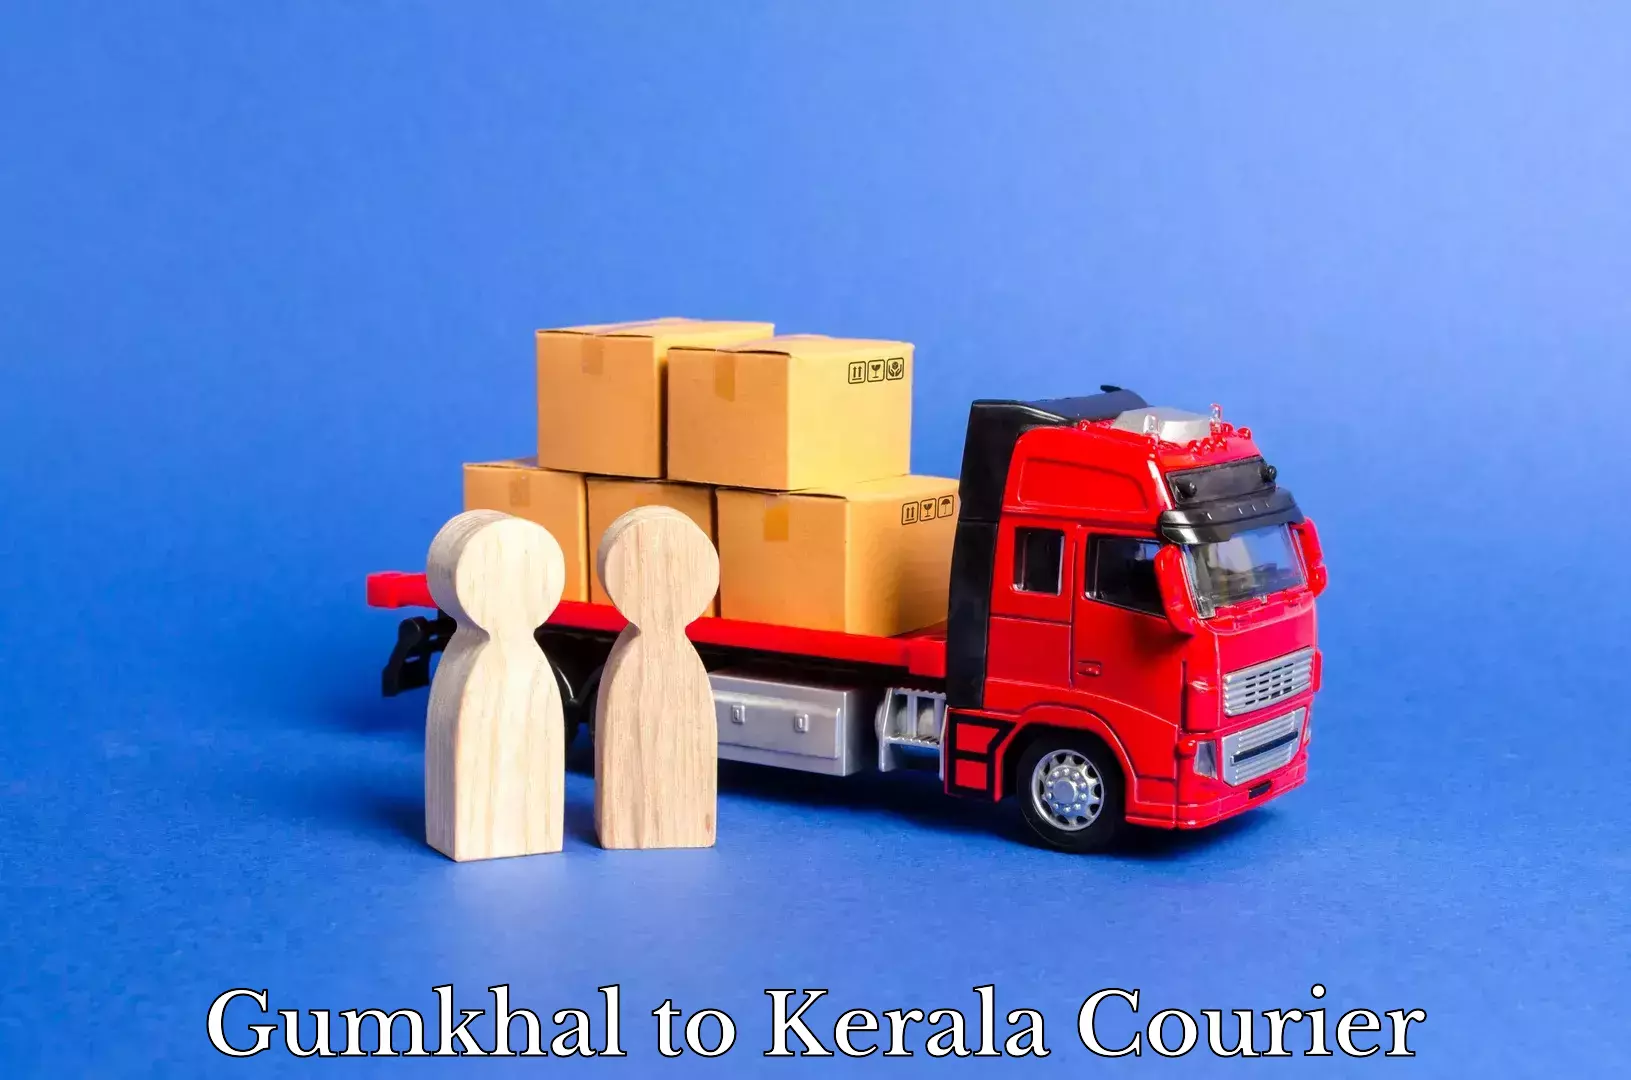 Courier service comparison Gumkhal to Kerala